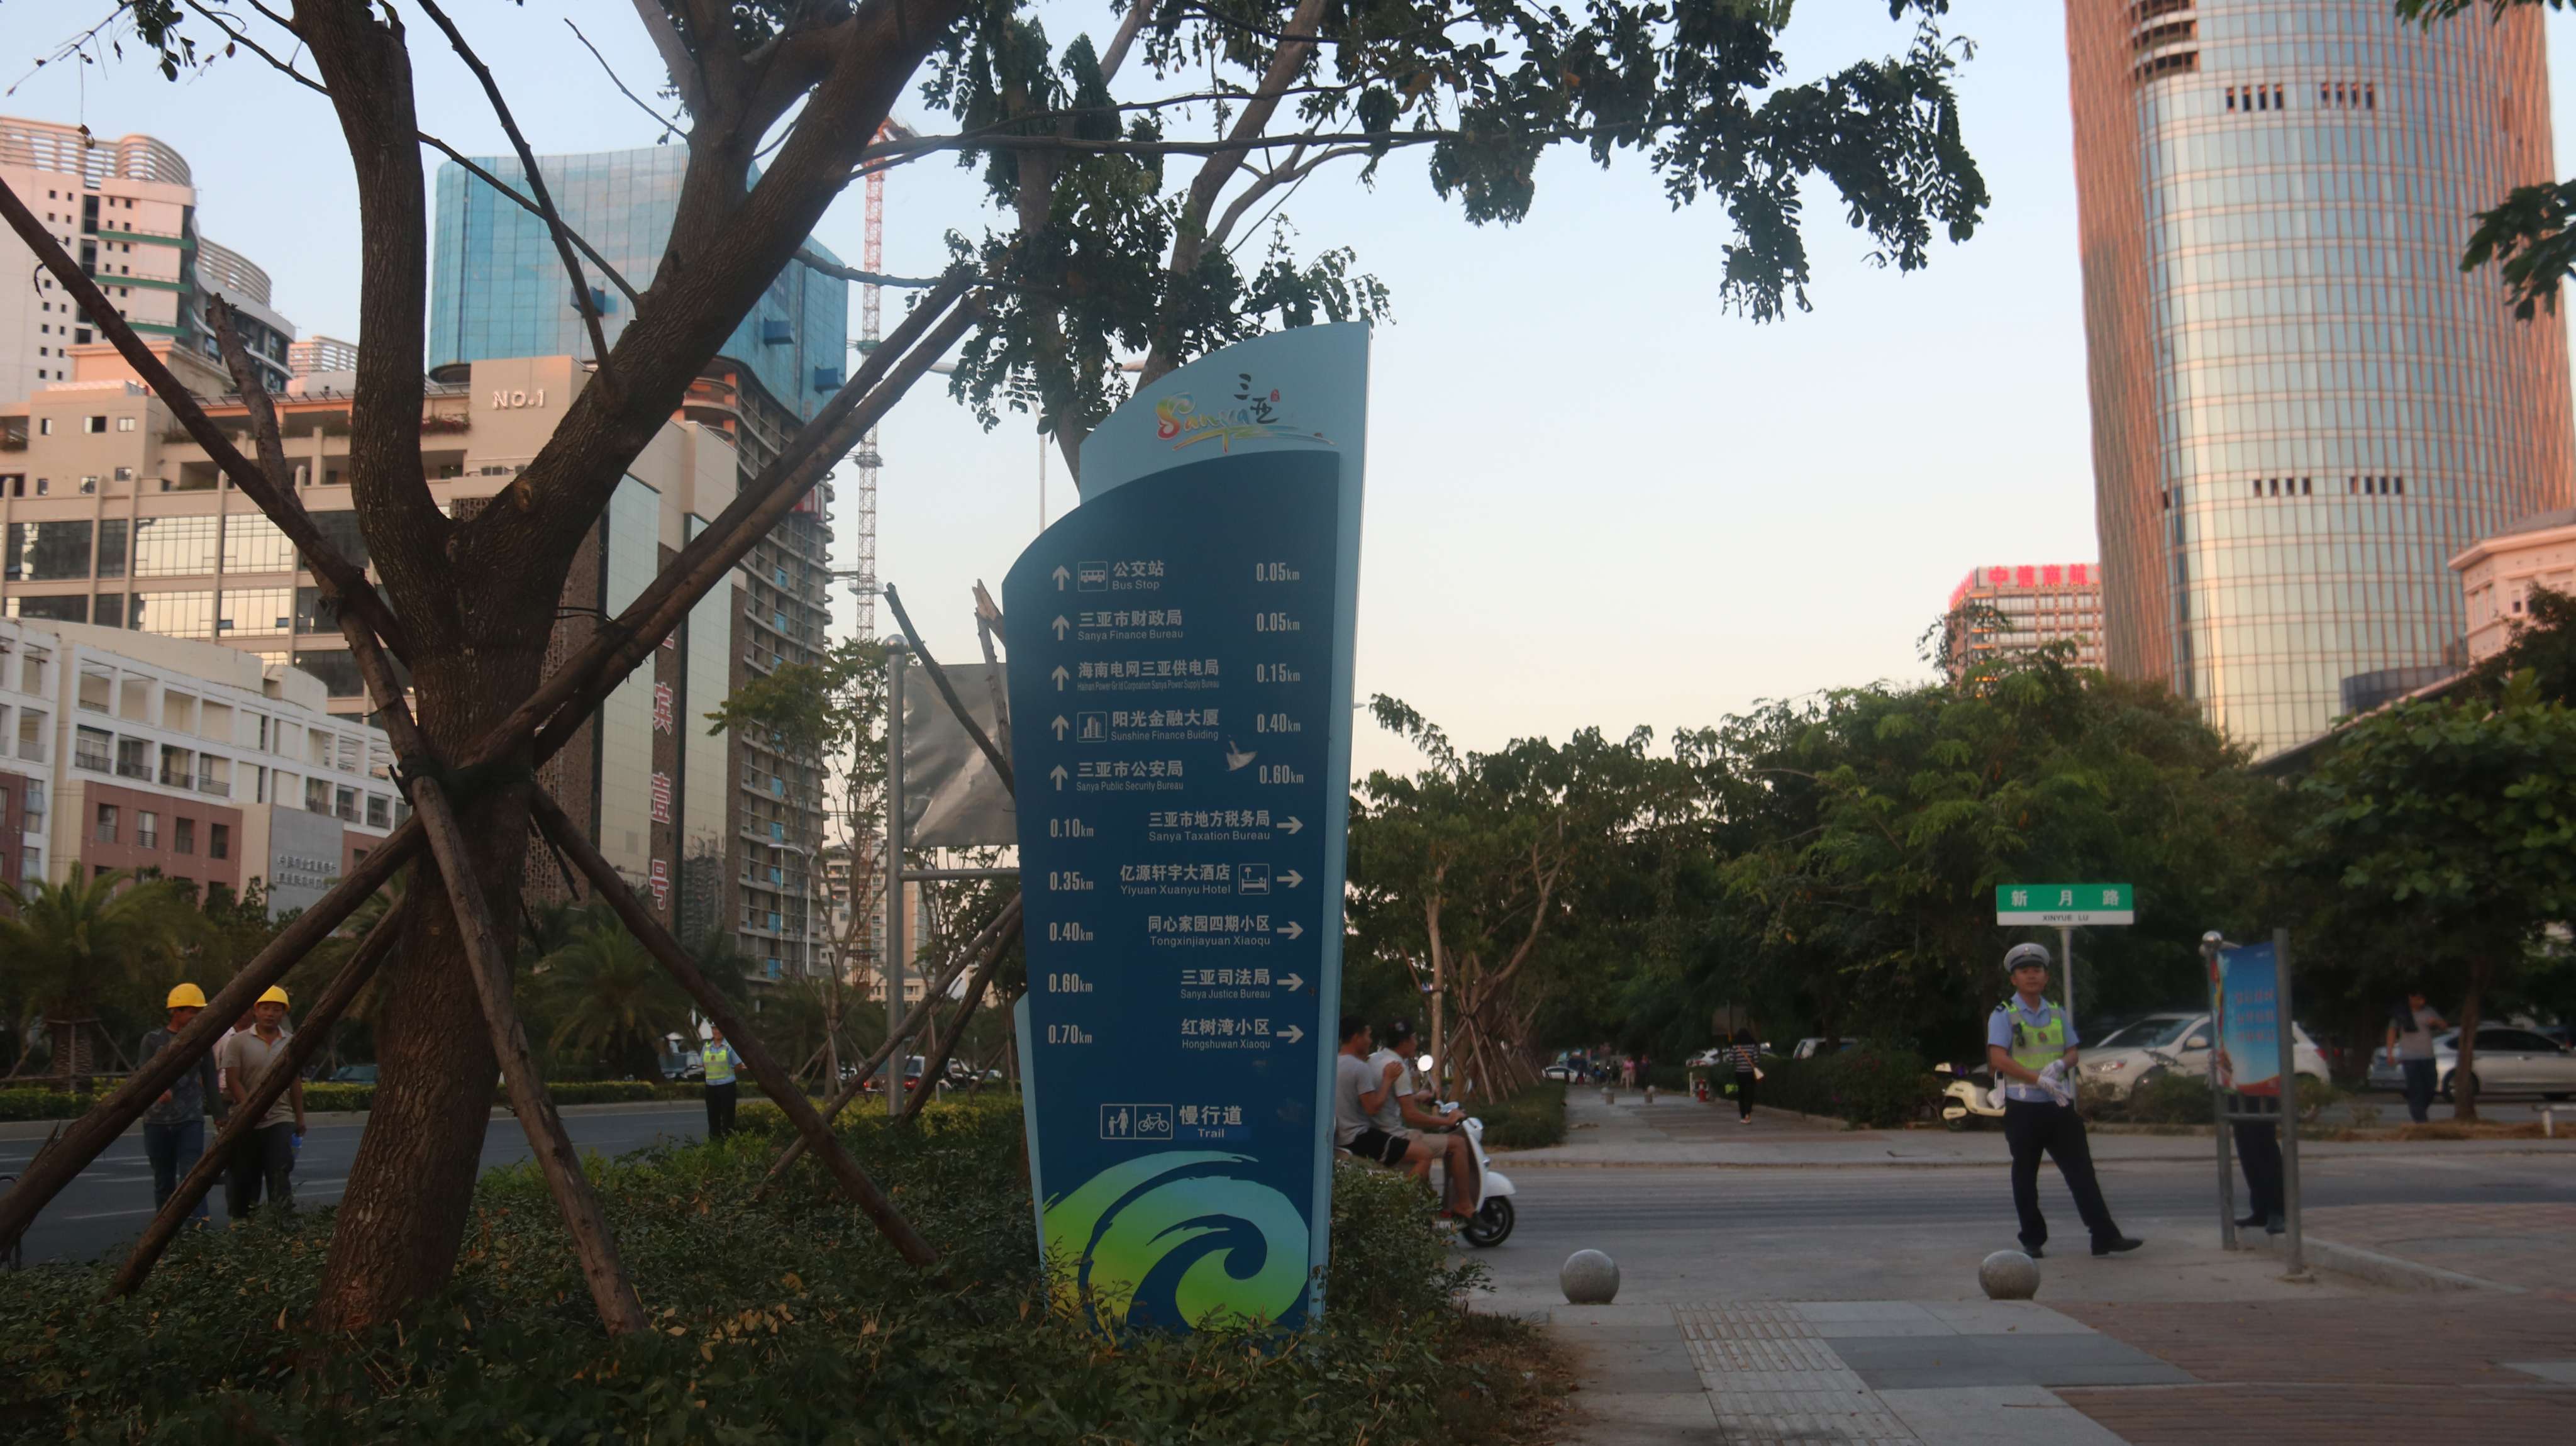 三亚城市慢行道导向标识规划项目顺利竣工